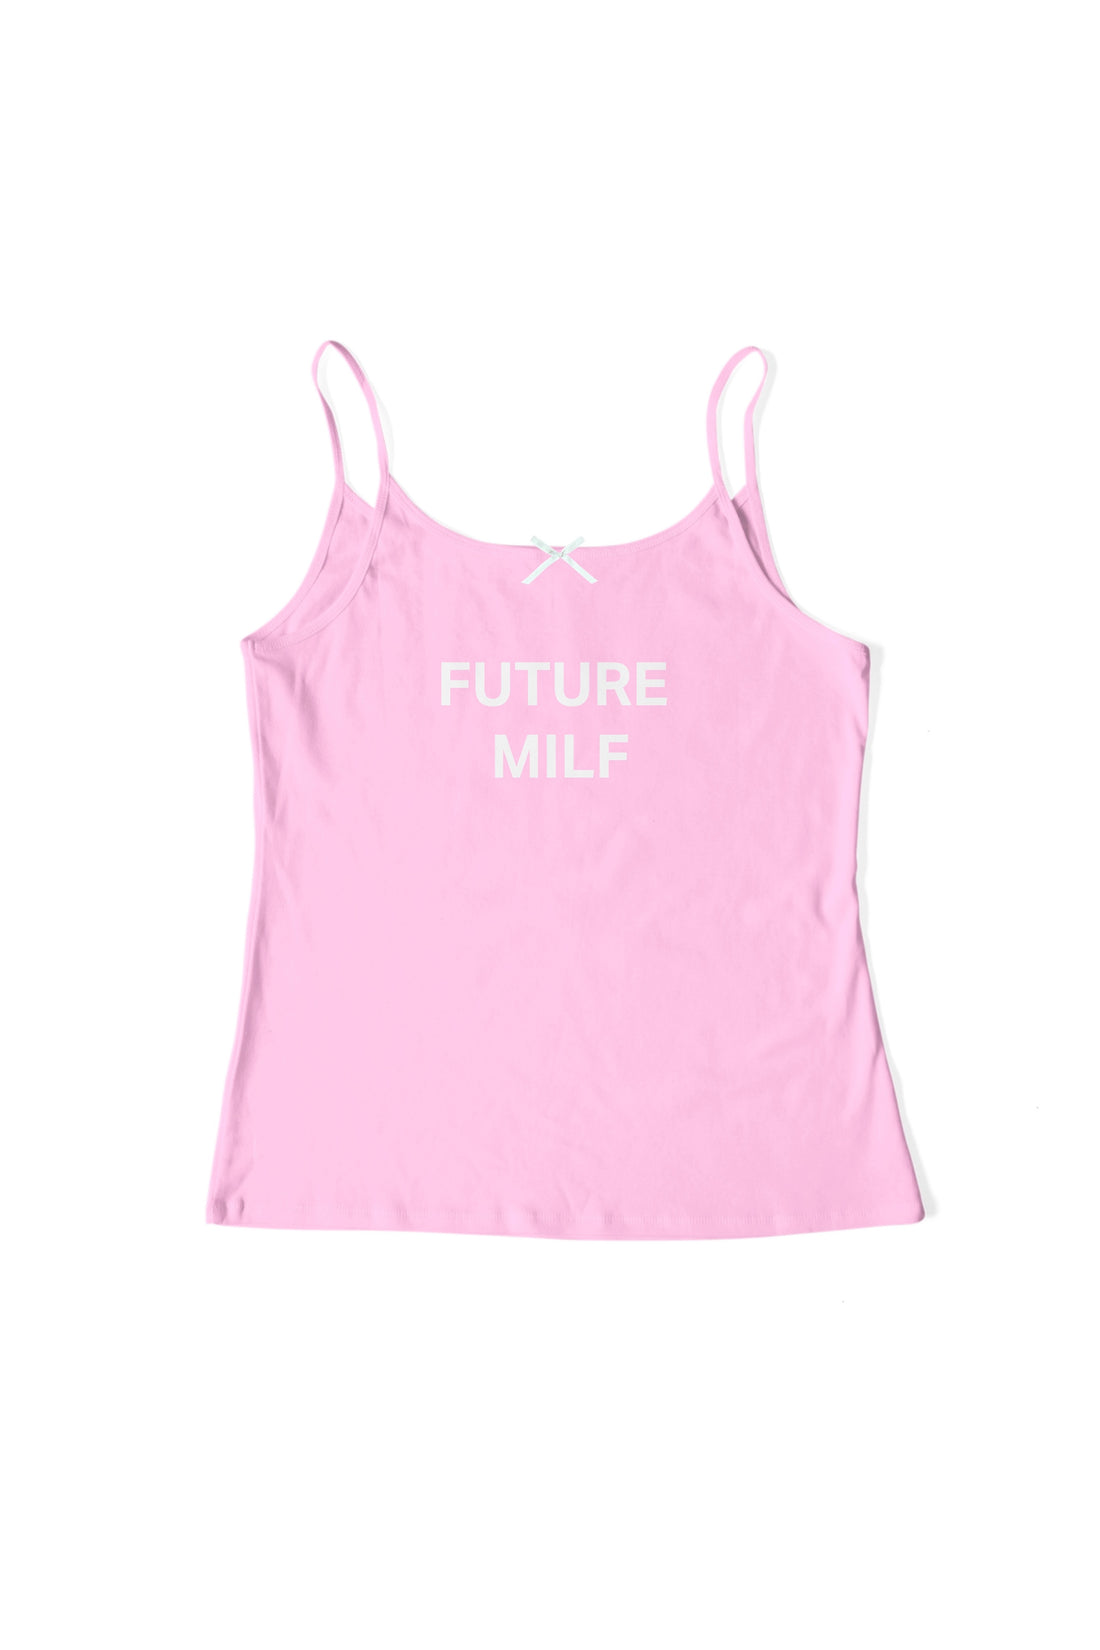 Future M*LF Pink Tank Top